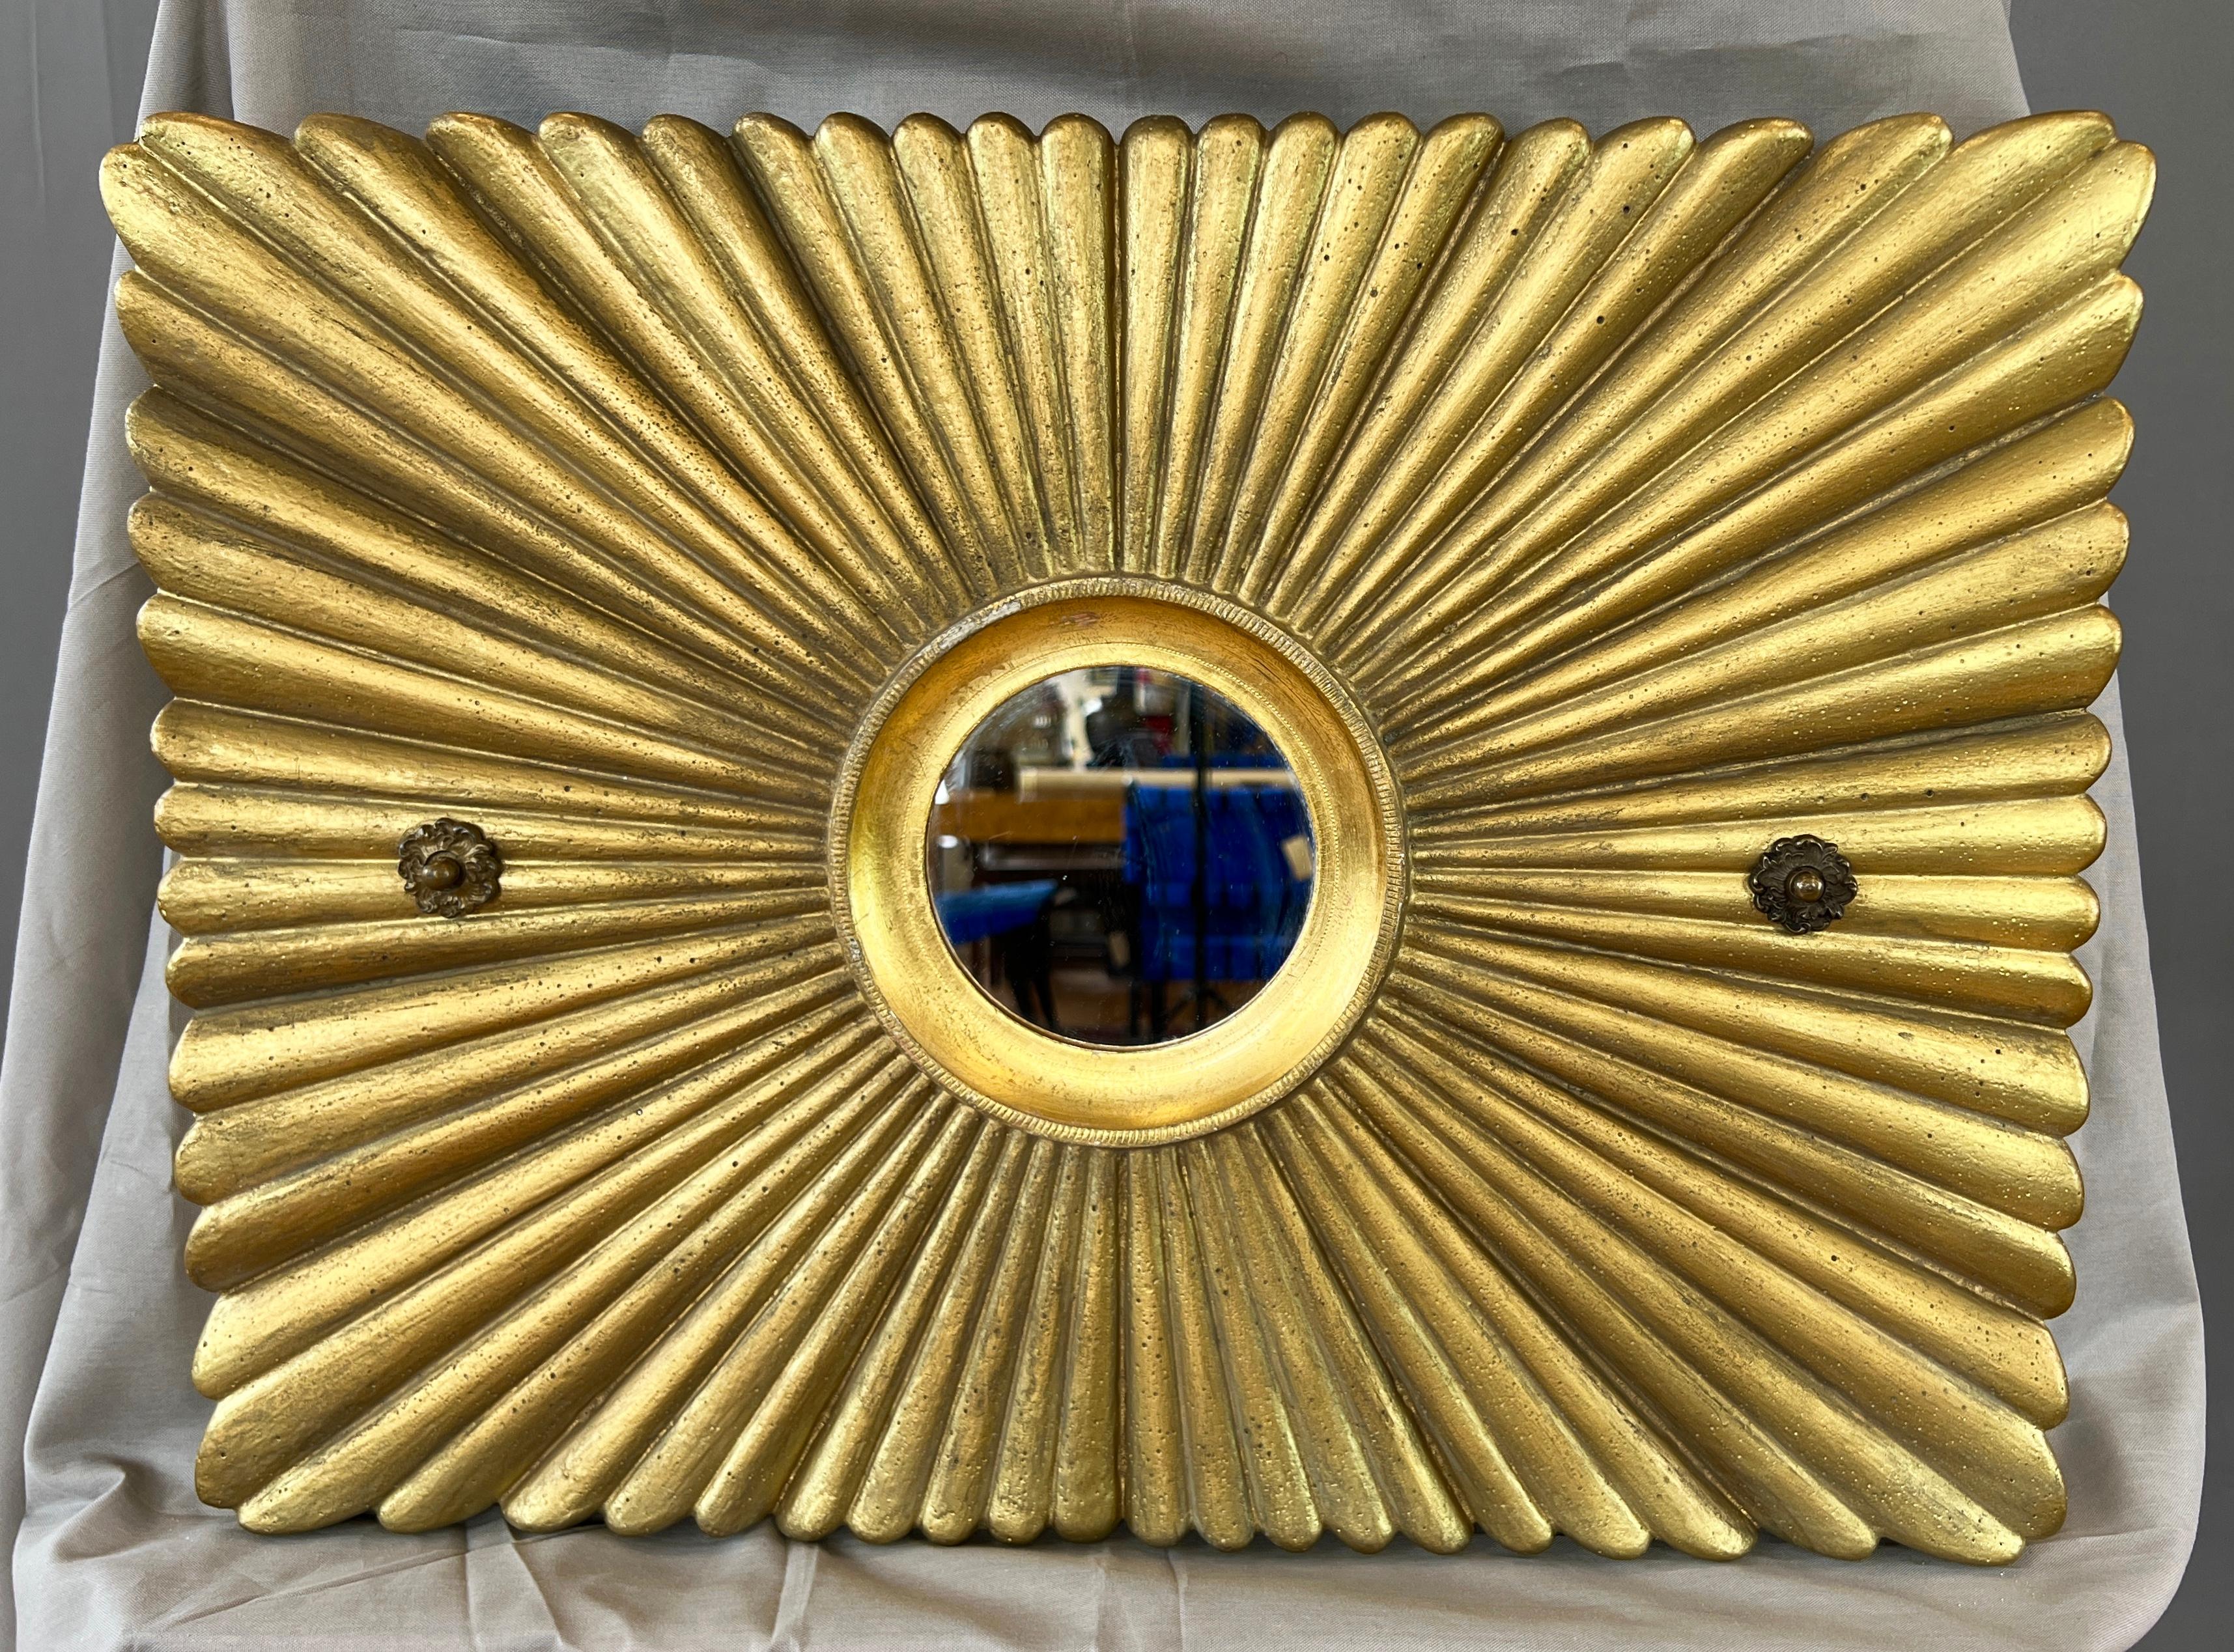 Ein Art Deco um 1920 mit Goldfarbe bemalter, massiver Gips-Sunburst-Dekoration mit vergoldetem, metallgerahmtem Spiegel aus einem gehobenen Kino oder Schauspielhaus.

Ein klassisches Dekorelement in klarem, zeitlosem Stil, mit einem sehr